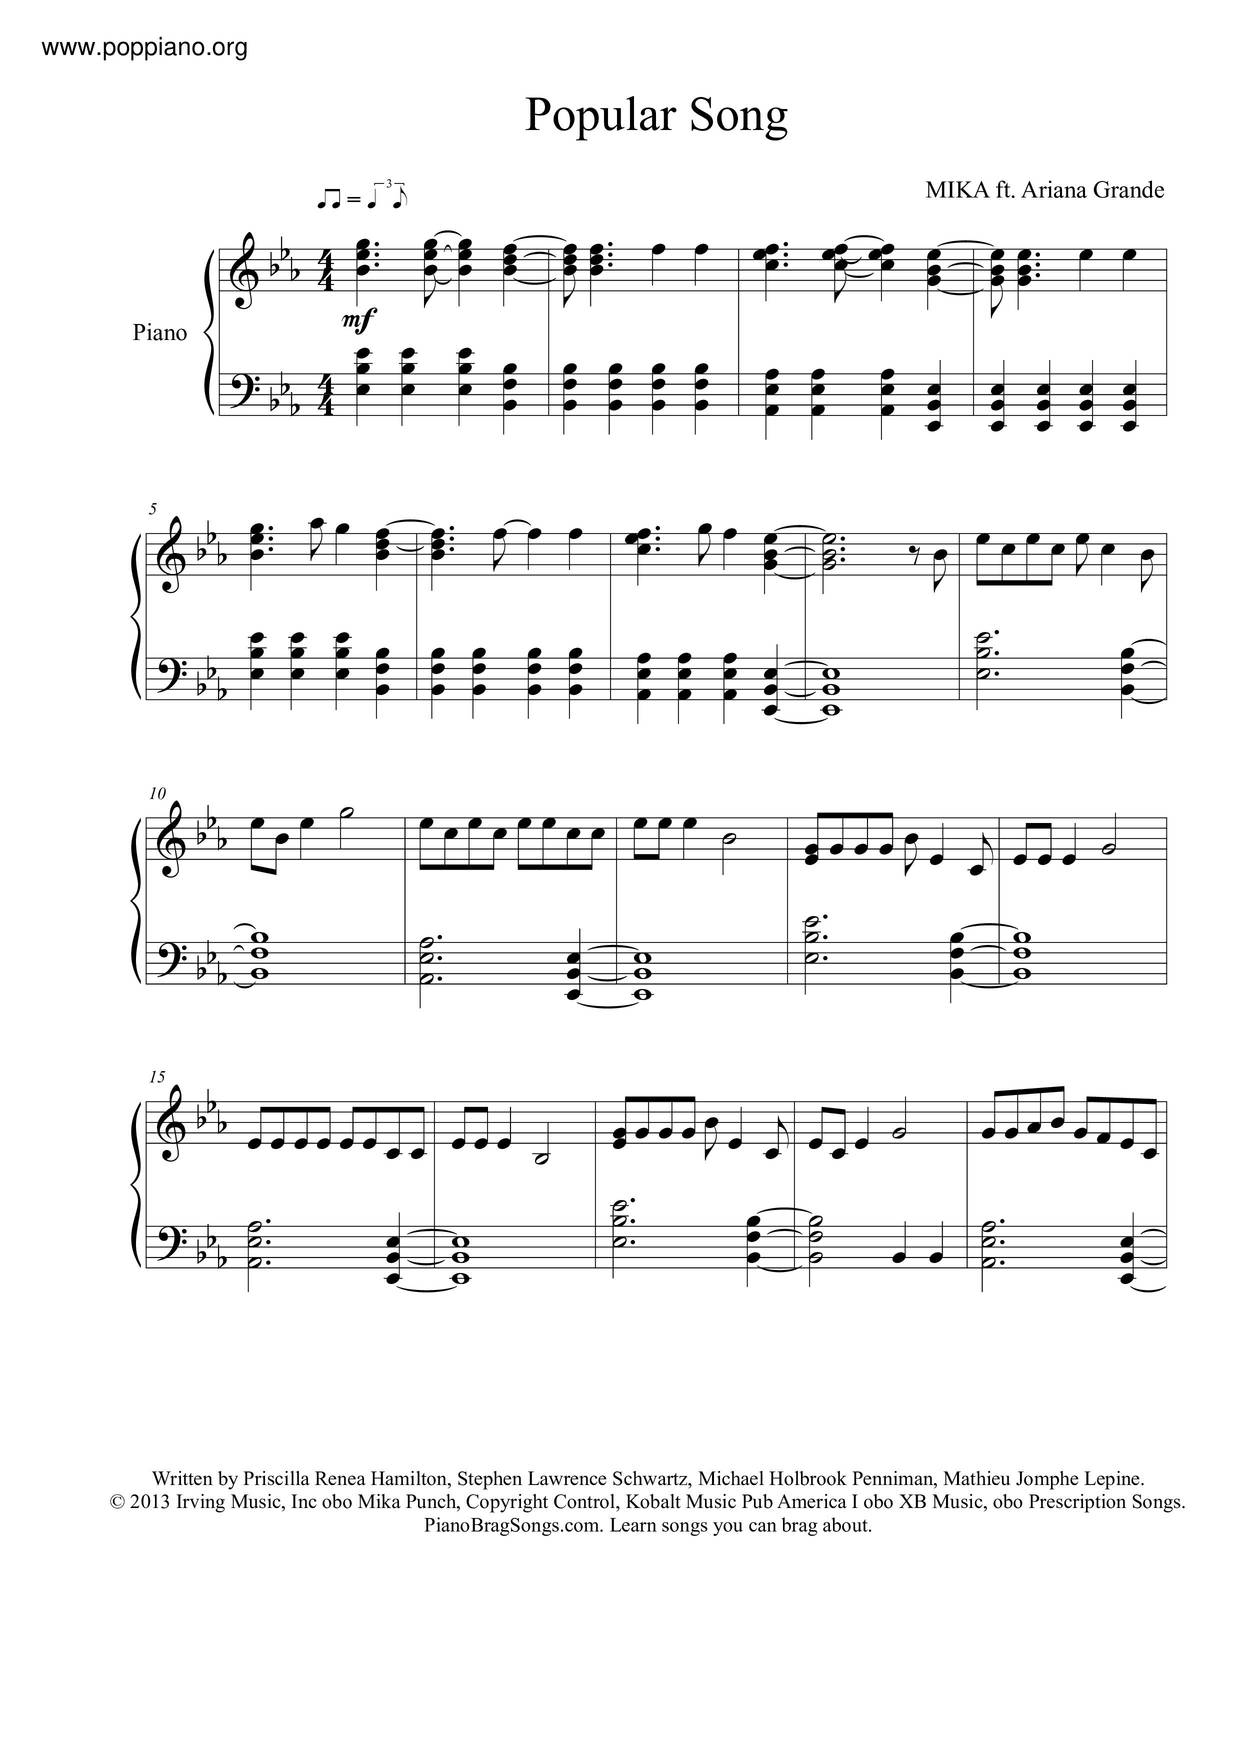 Ingang nep Lastig ☆ Mika, Ariana Grande-Popular Song Sheet Music pdf, - Free Score Download ☆